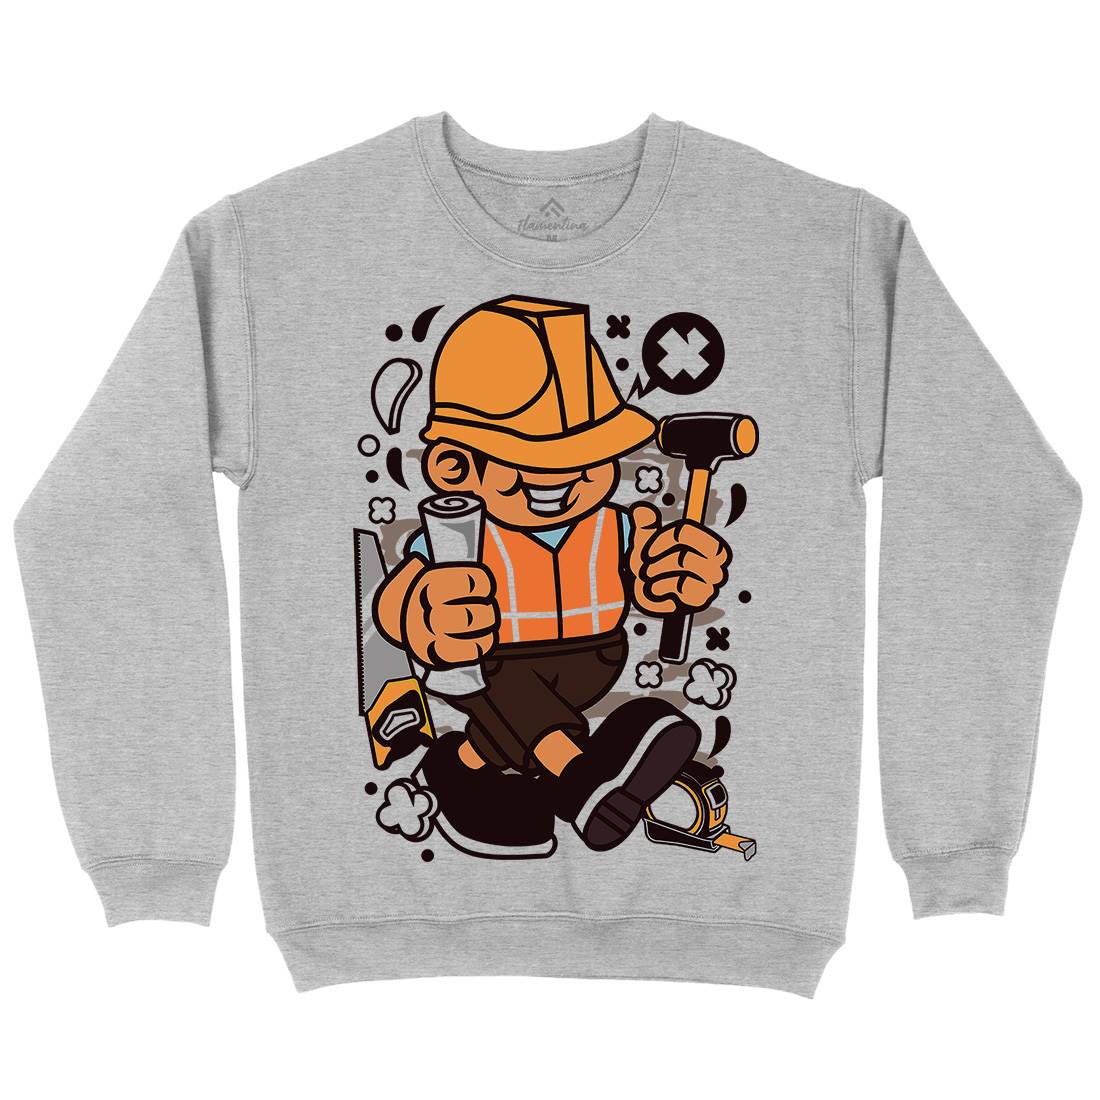 Construction Worker Kid Mens Crew Neck Sweatshirt Work C078